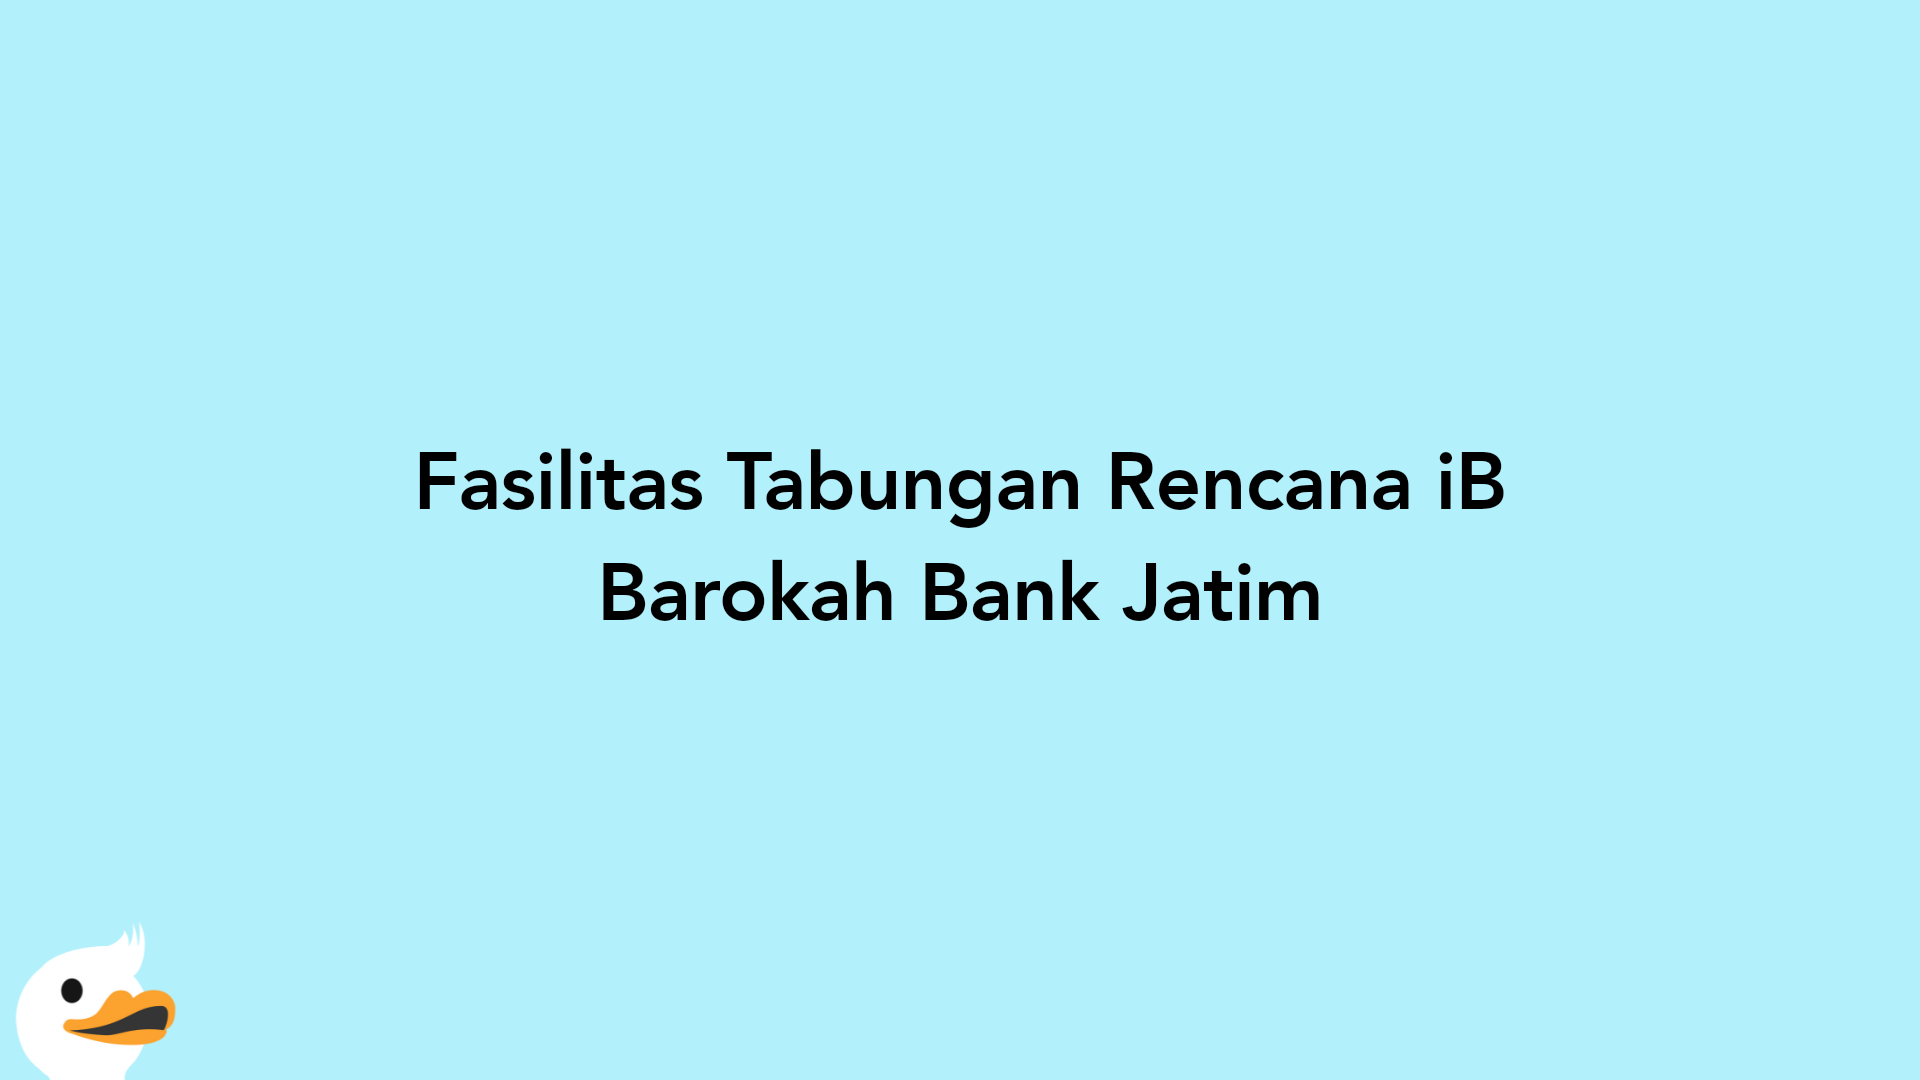 Fasilitas Tabungan Rencana iB Barokah Bank Jatim